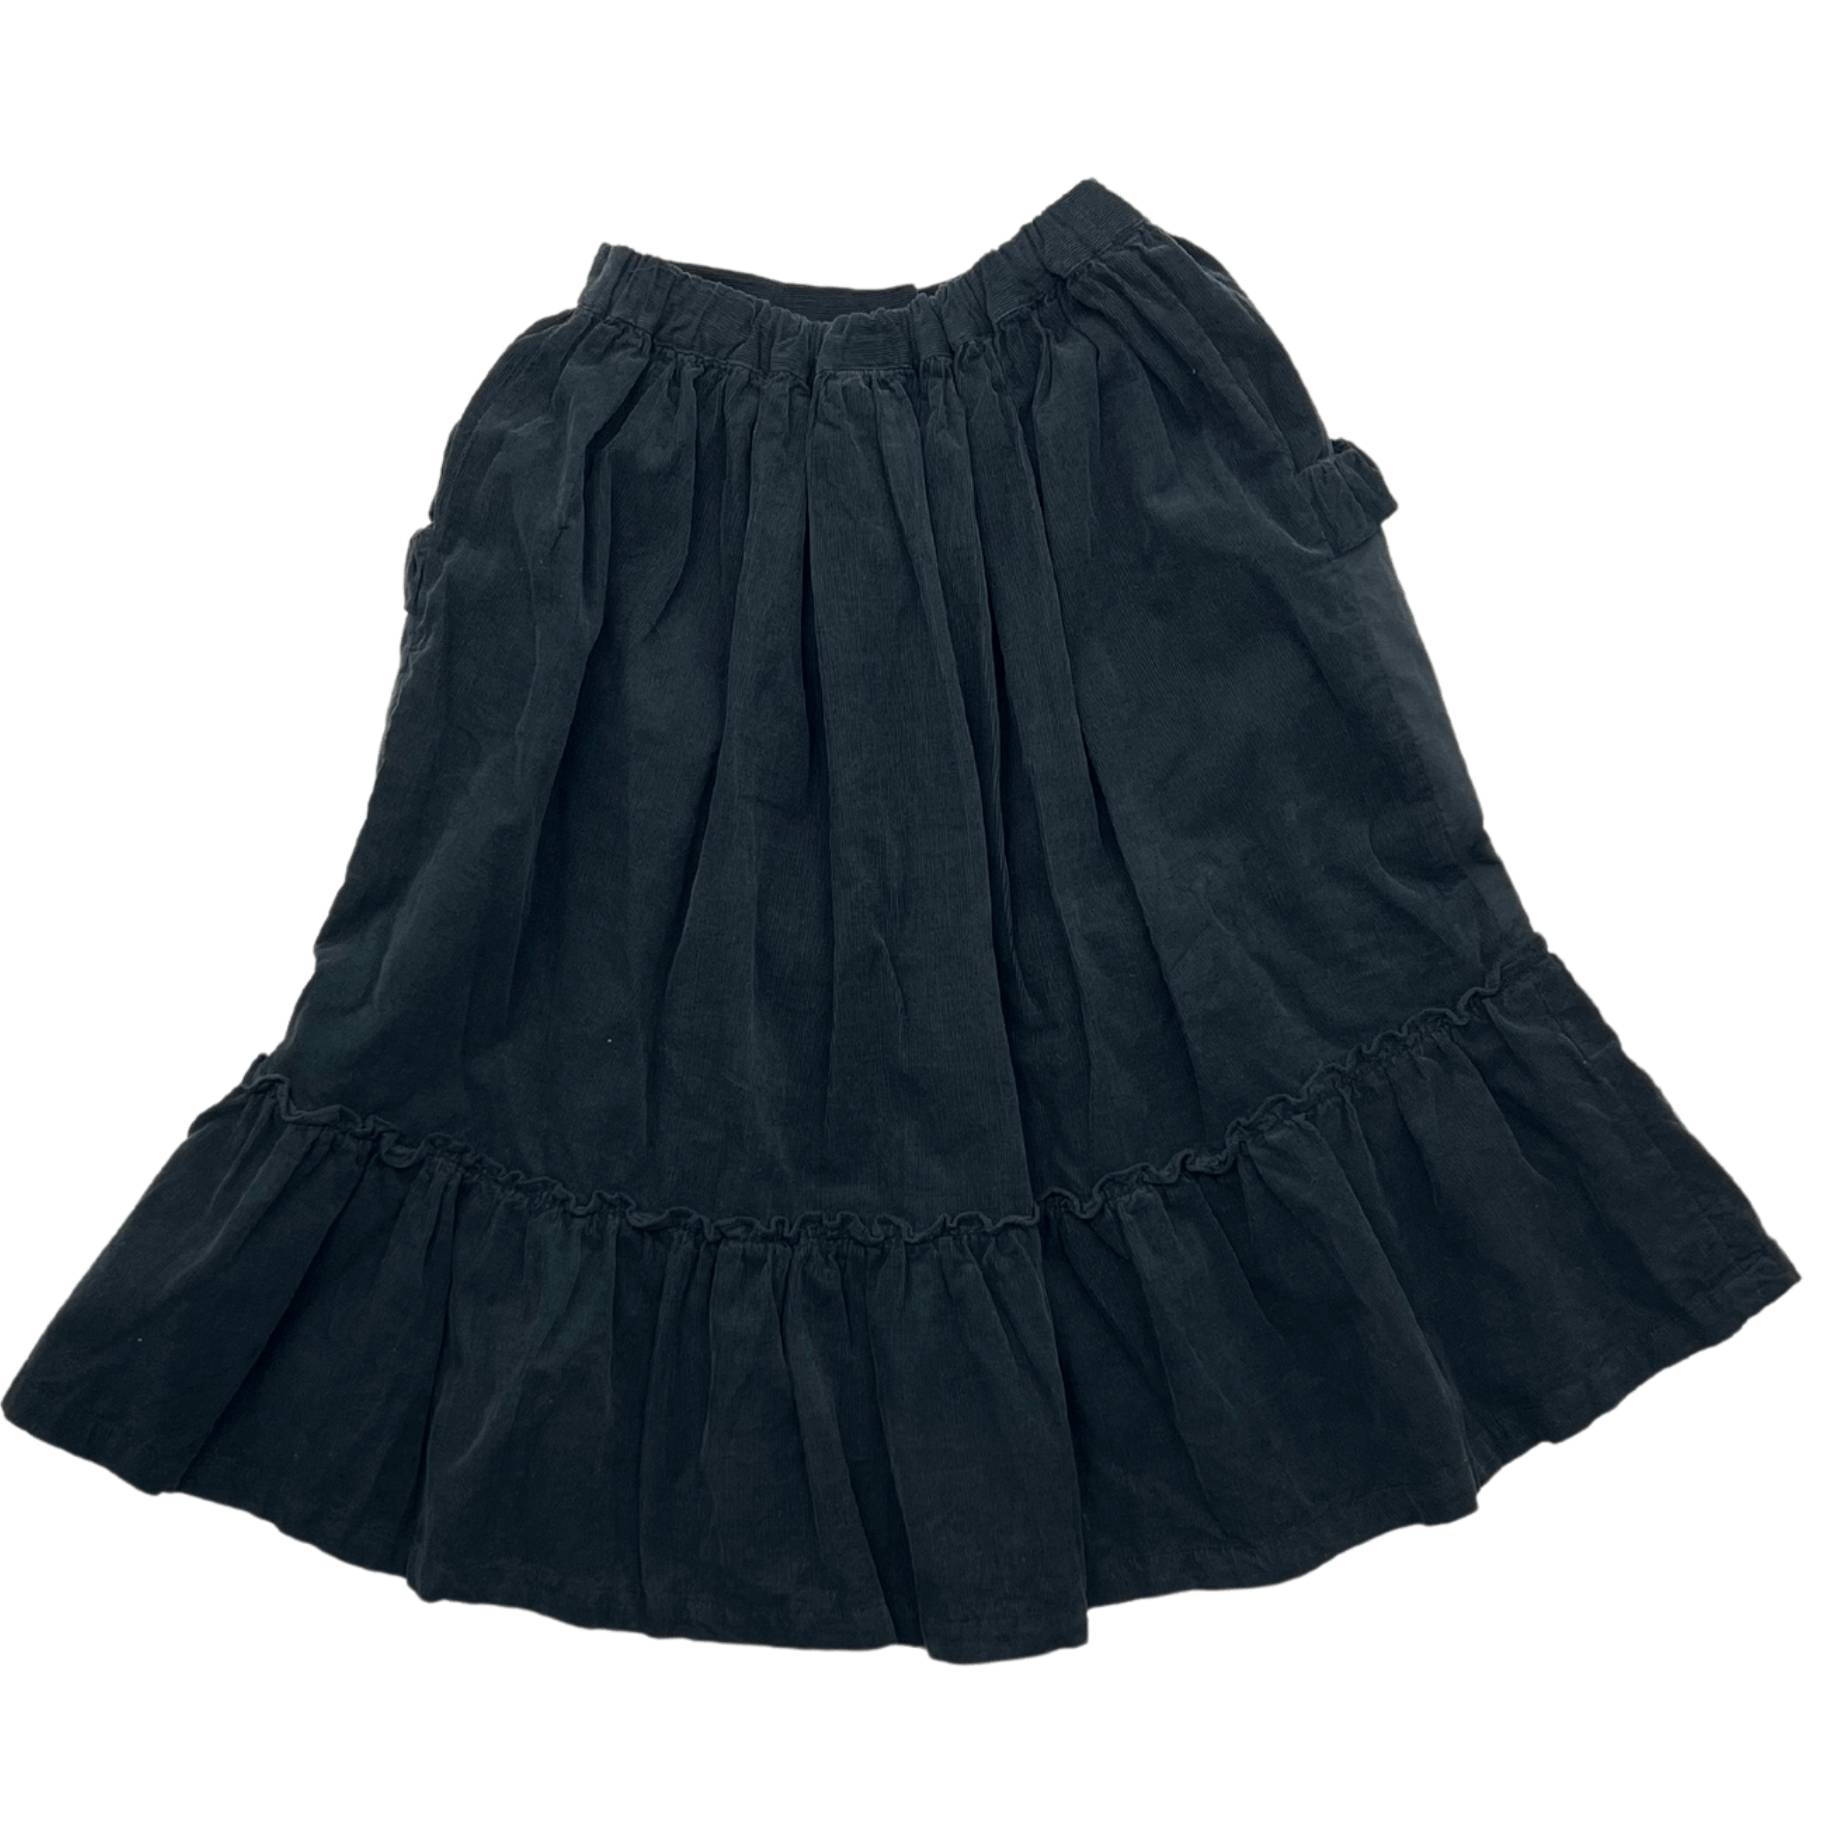 BONTON - Velvet skirt - 4 years old